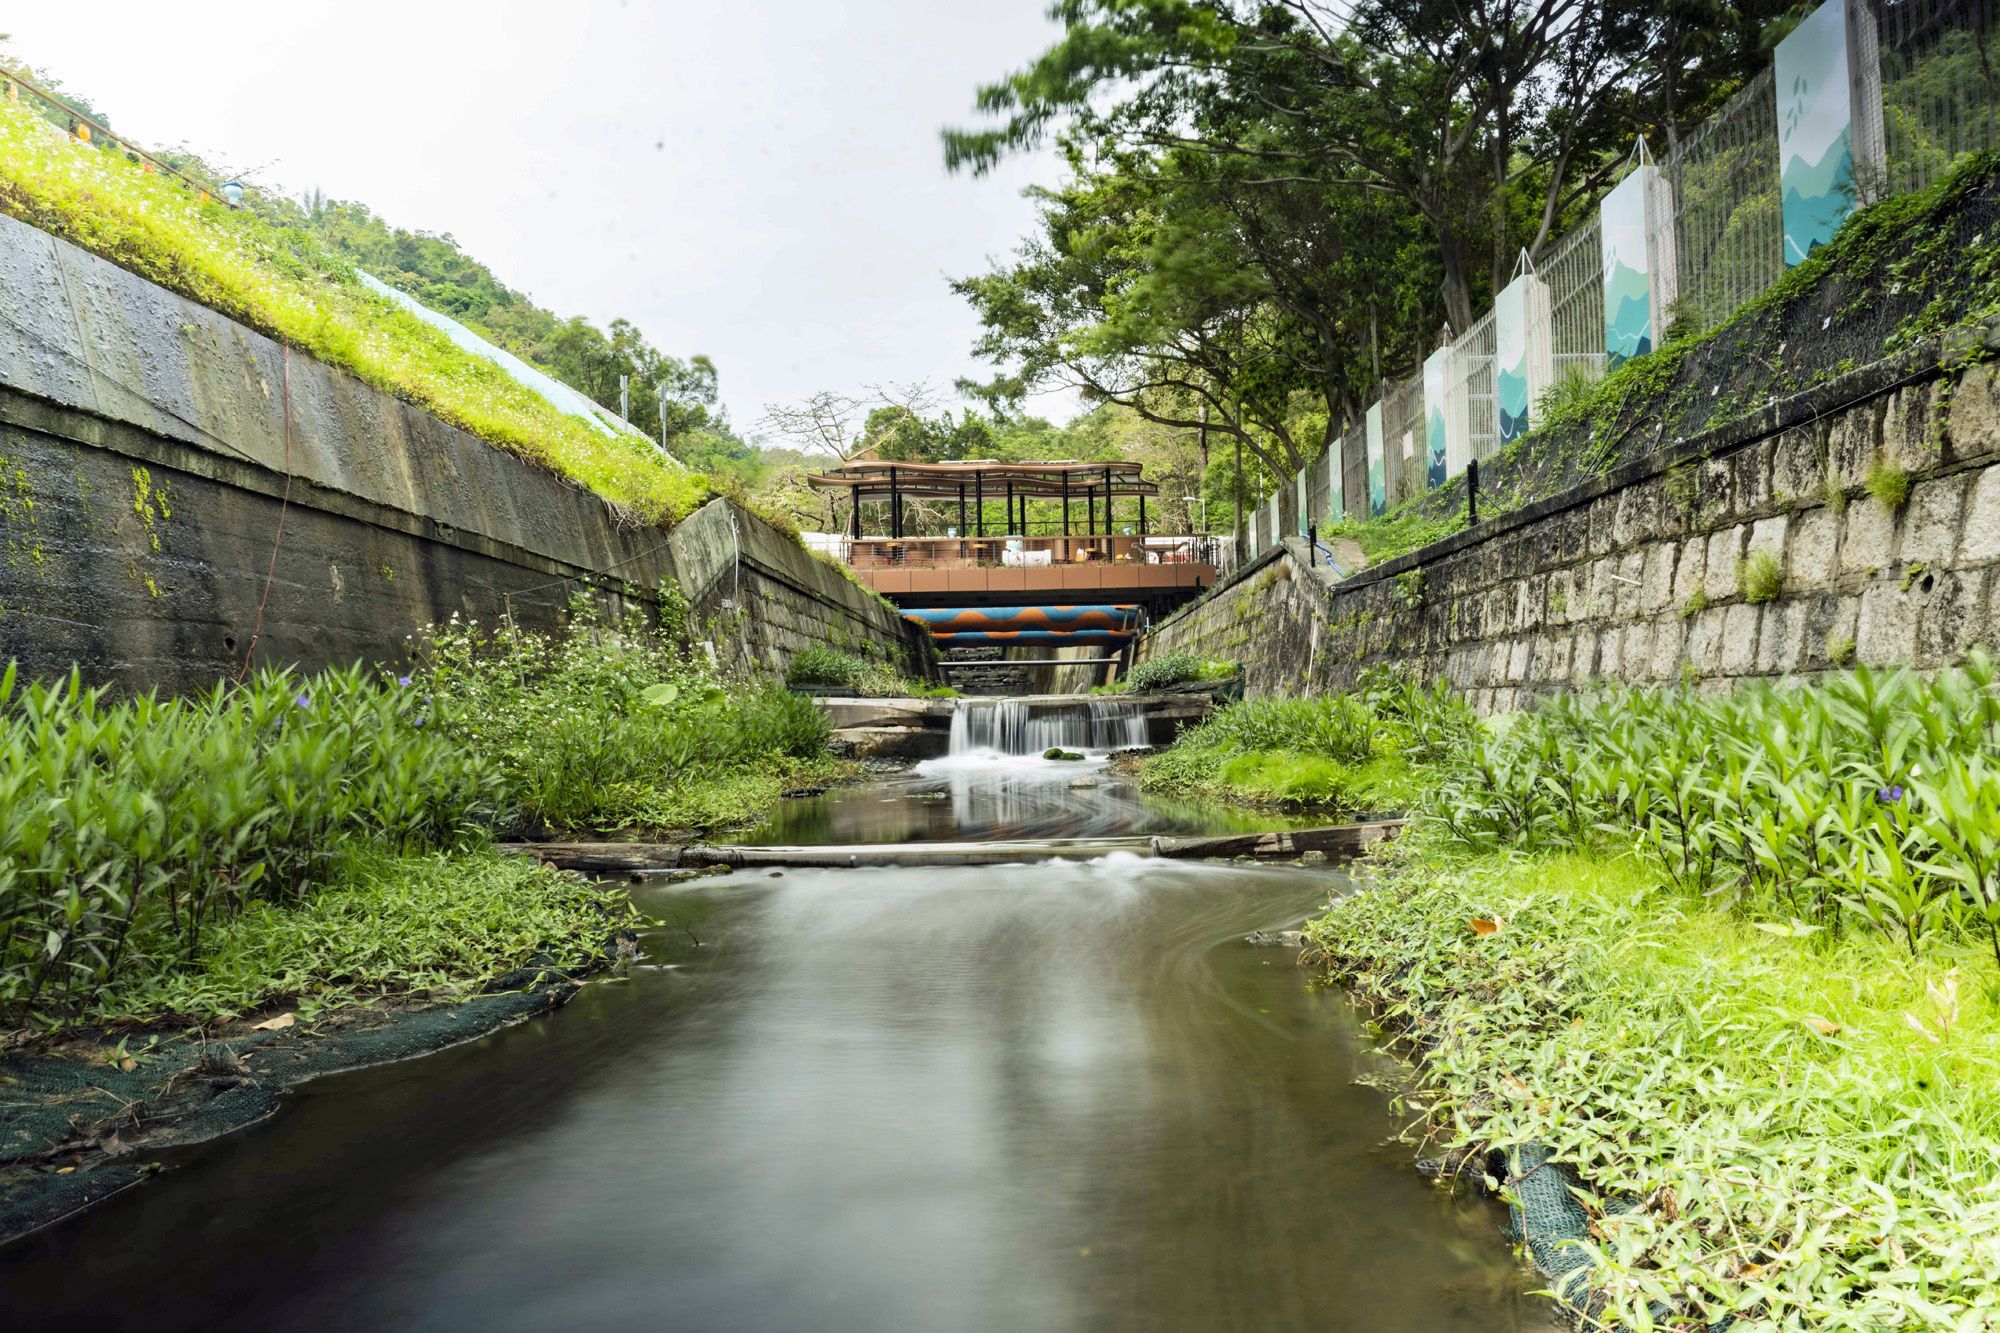 佐敦谷水道去年以「河畔城市」概念完成活化，展現綠化河道、增加公共休憩空間、帶動近水文化等多項設計元素，包括設置「綠化咖啡枱」、太陽能充電裝置等。